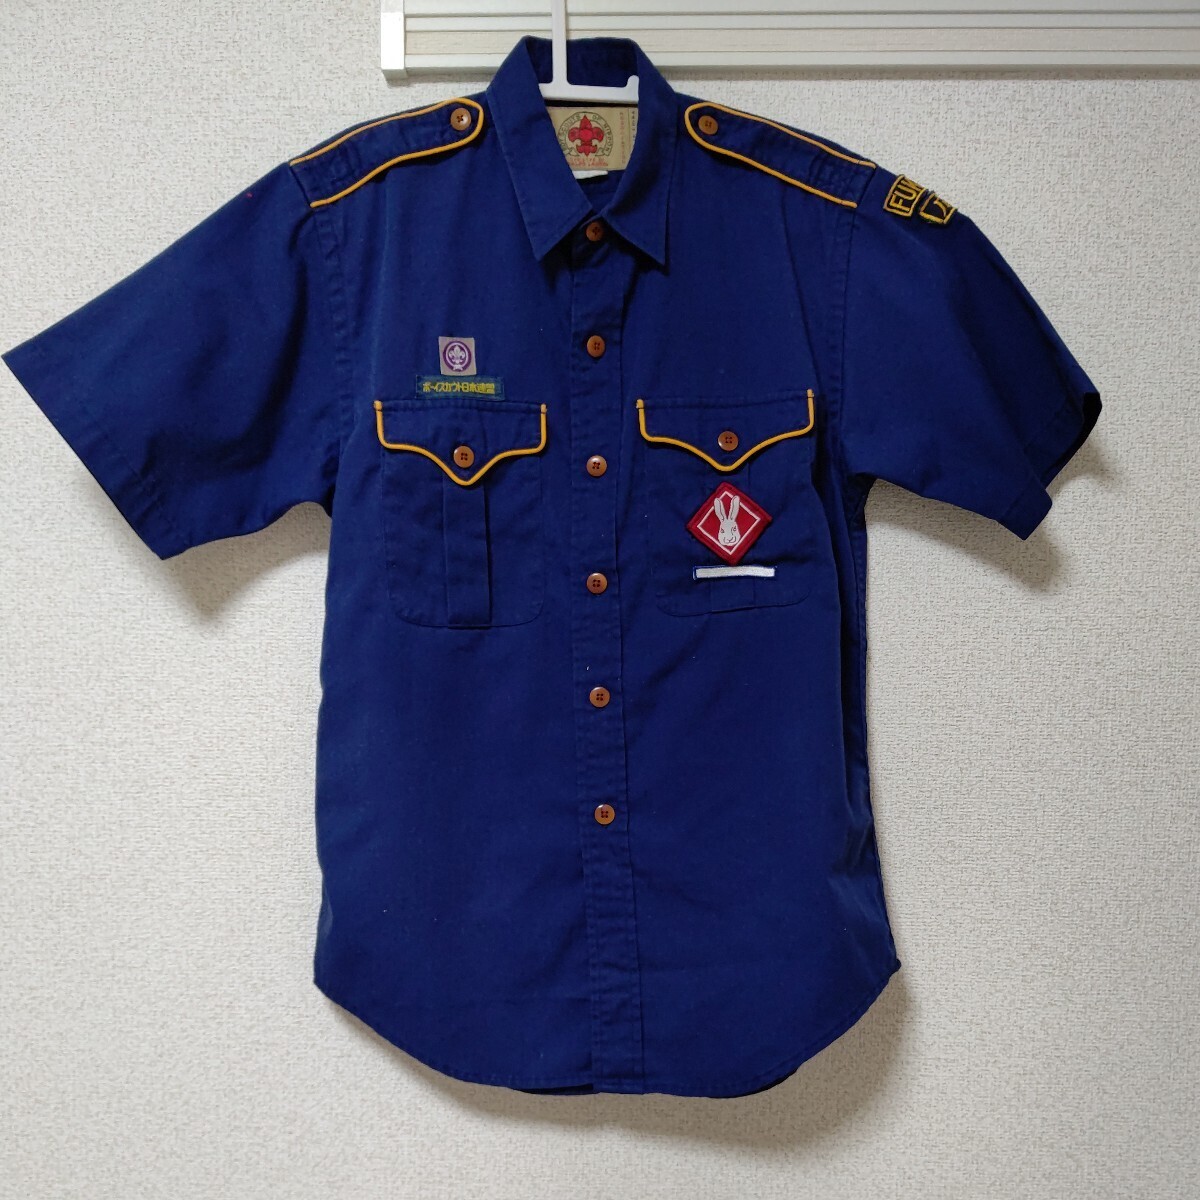 ボーイスカウト カブスカウト カブ隊 旧制服 半袖シャツ サイズ140  ラルフローレン の画像1